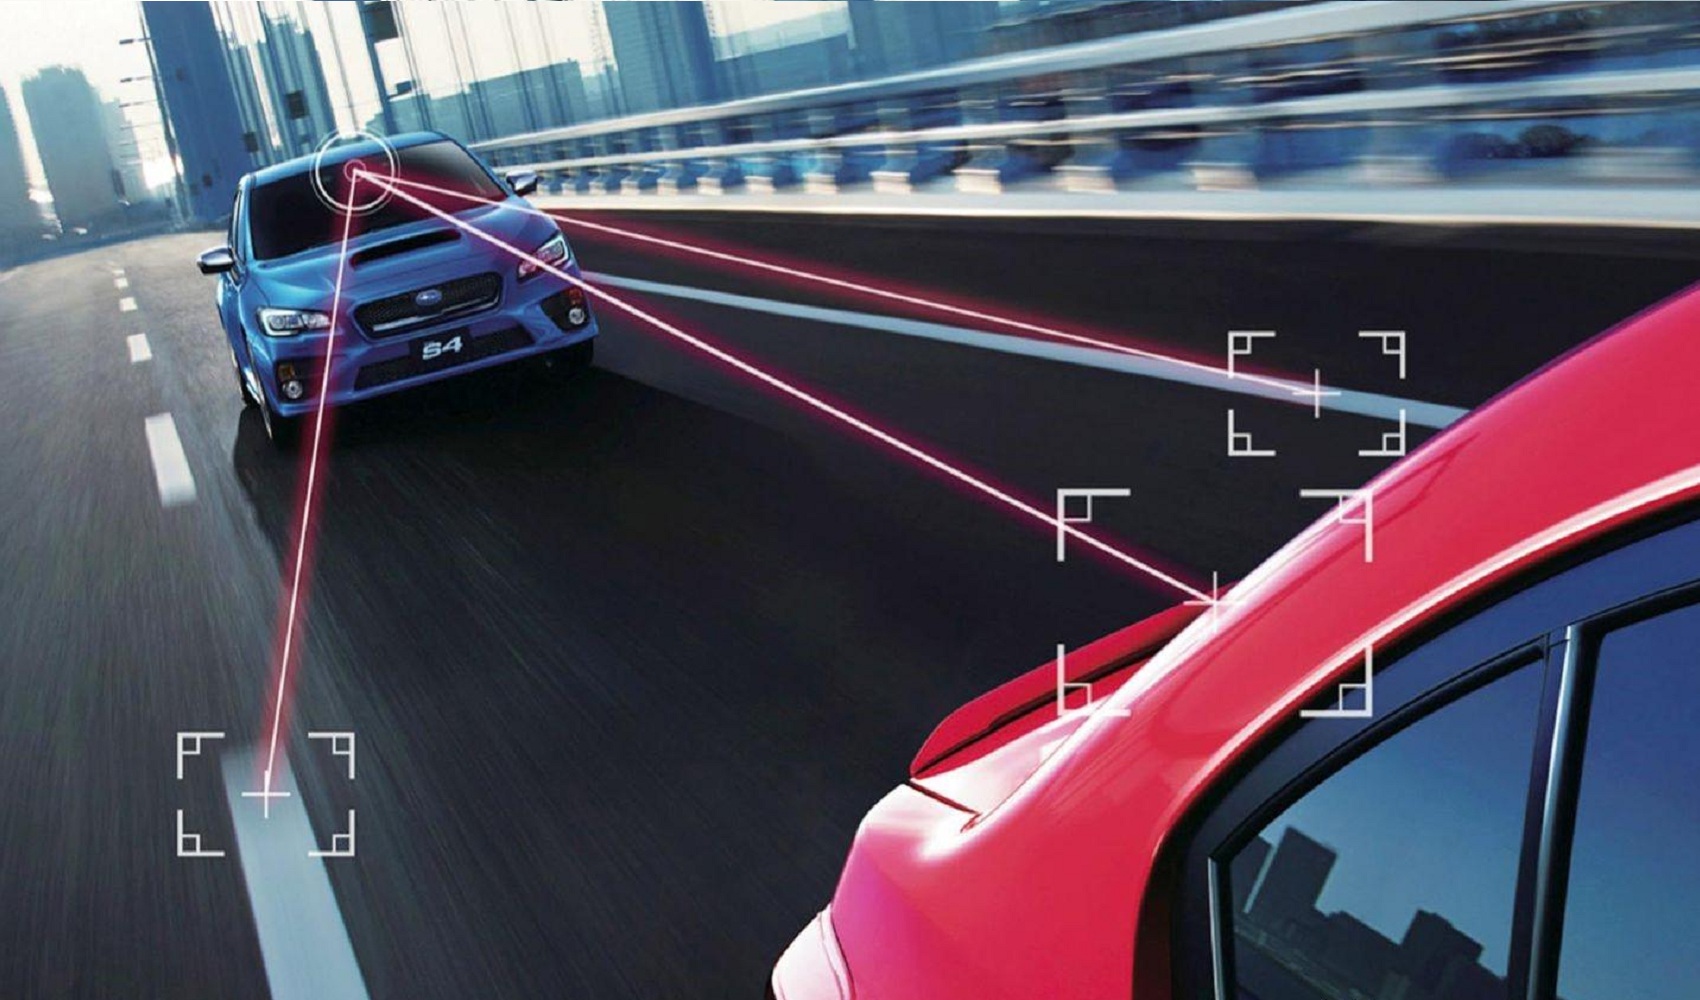 Hệ thống phanh AEB trở thành tính năng tiêu chuẩn trên ô tô từ năm 2023